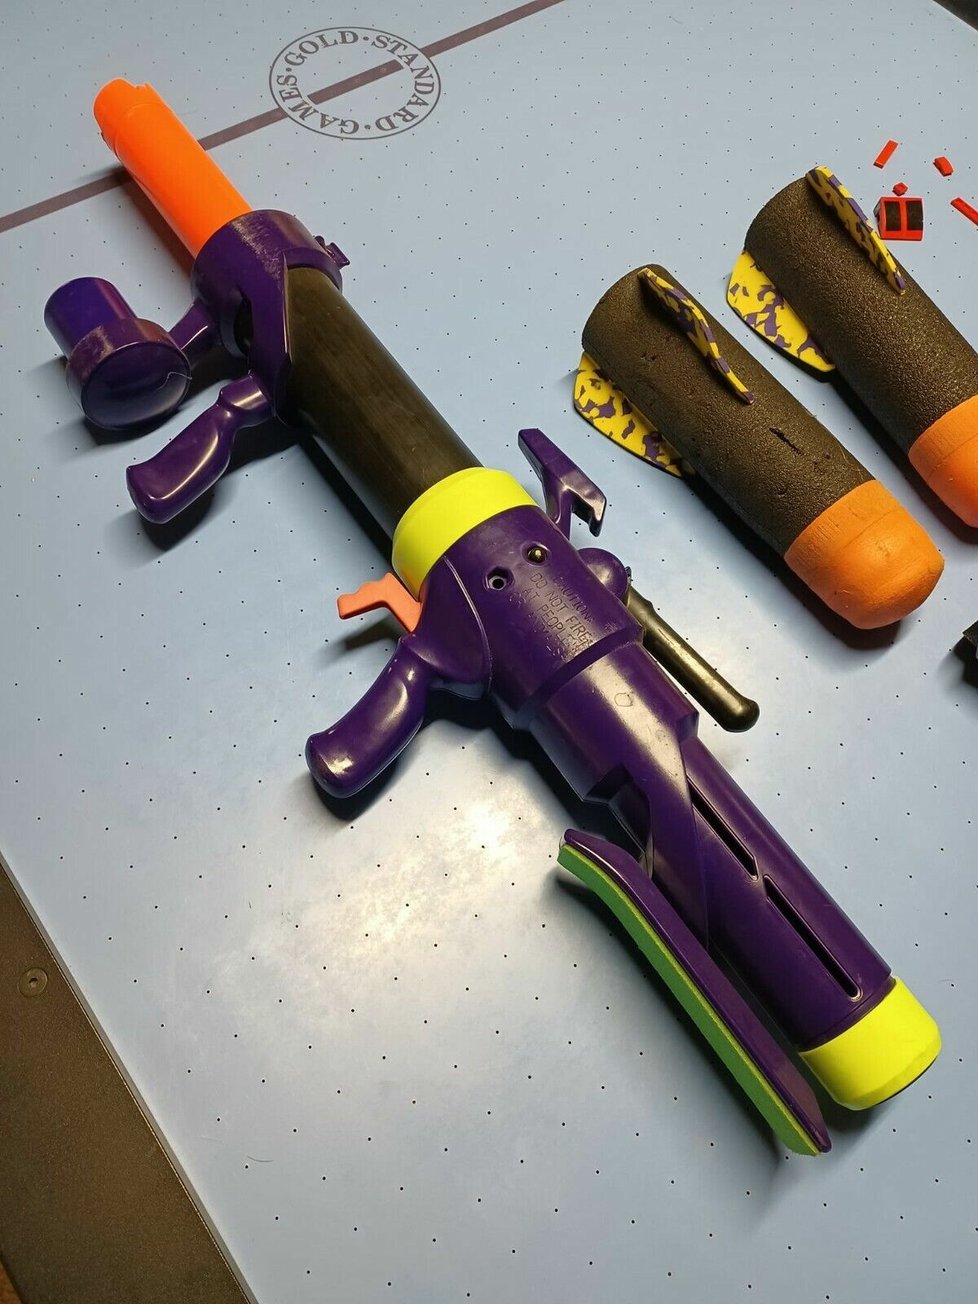 ULTIMATOR Bazooka Foam Rocket Blaster